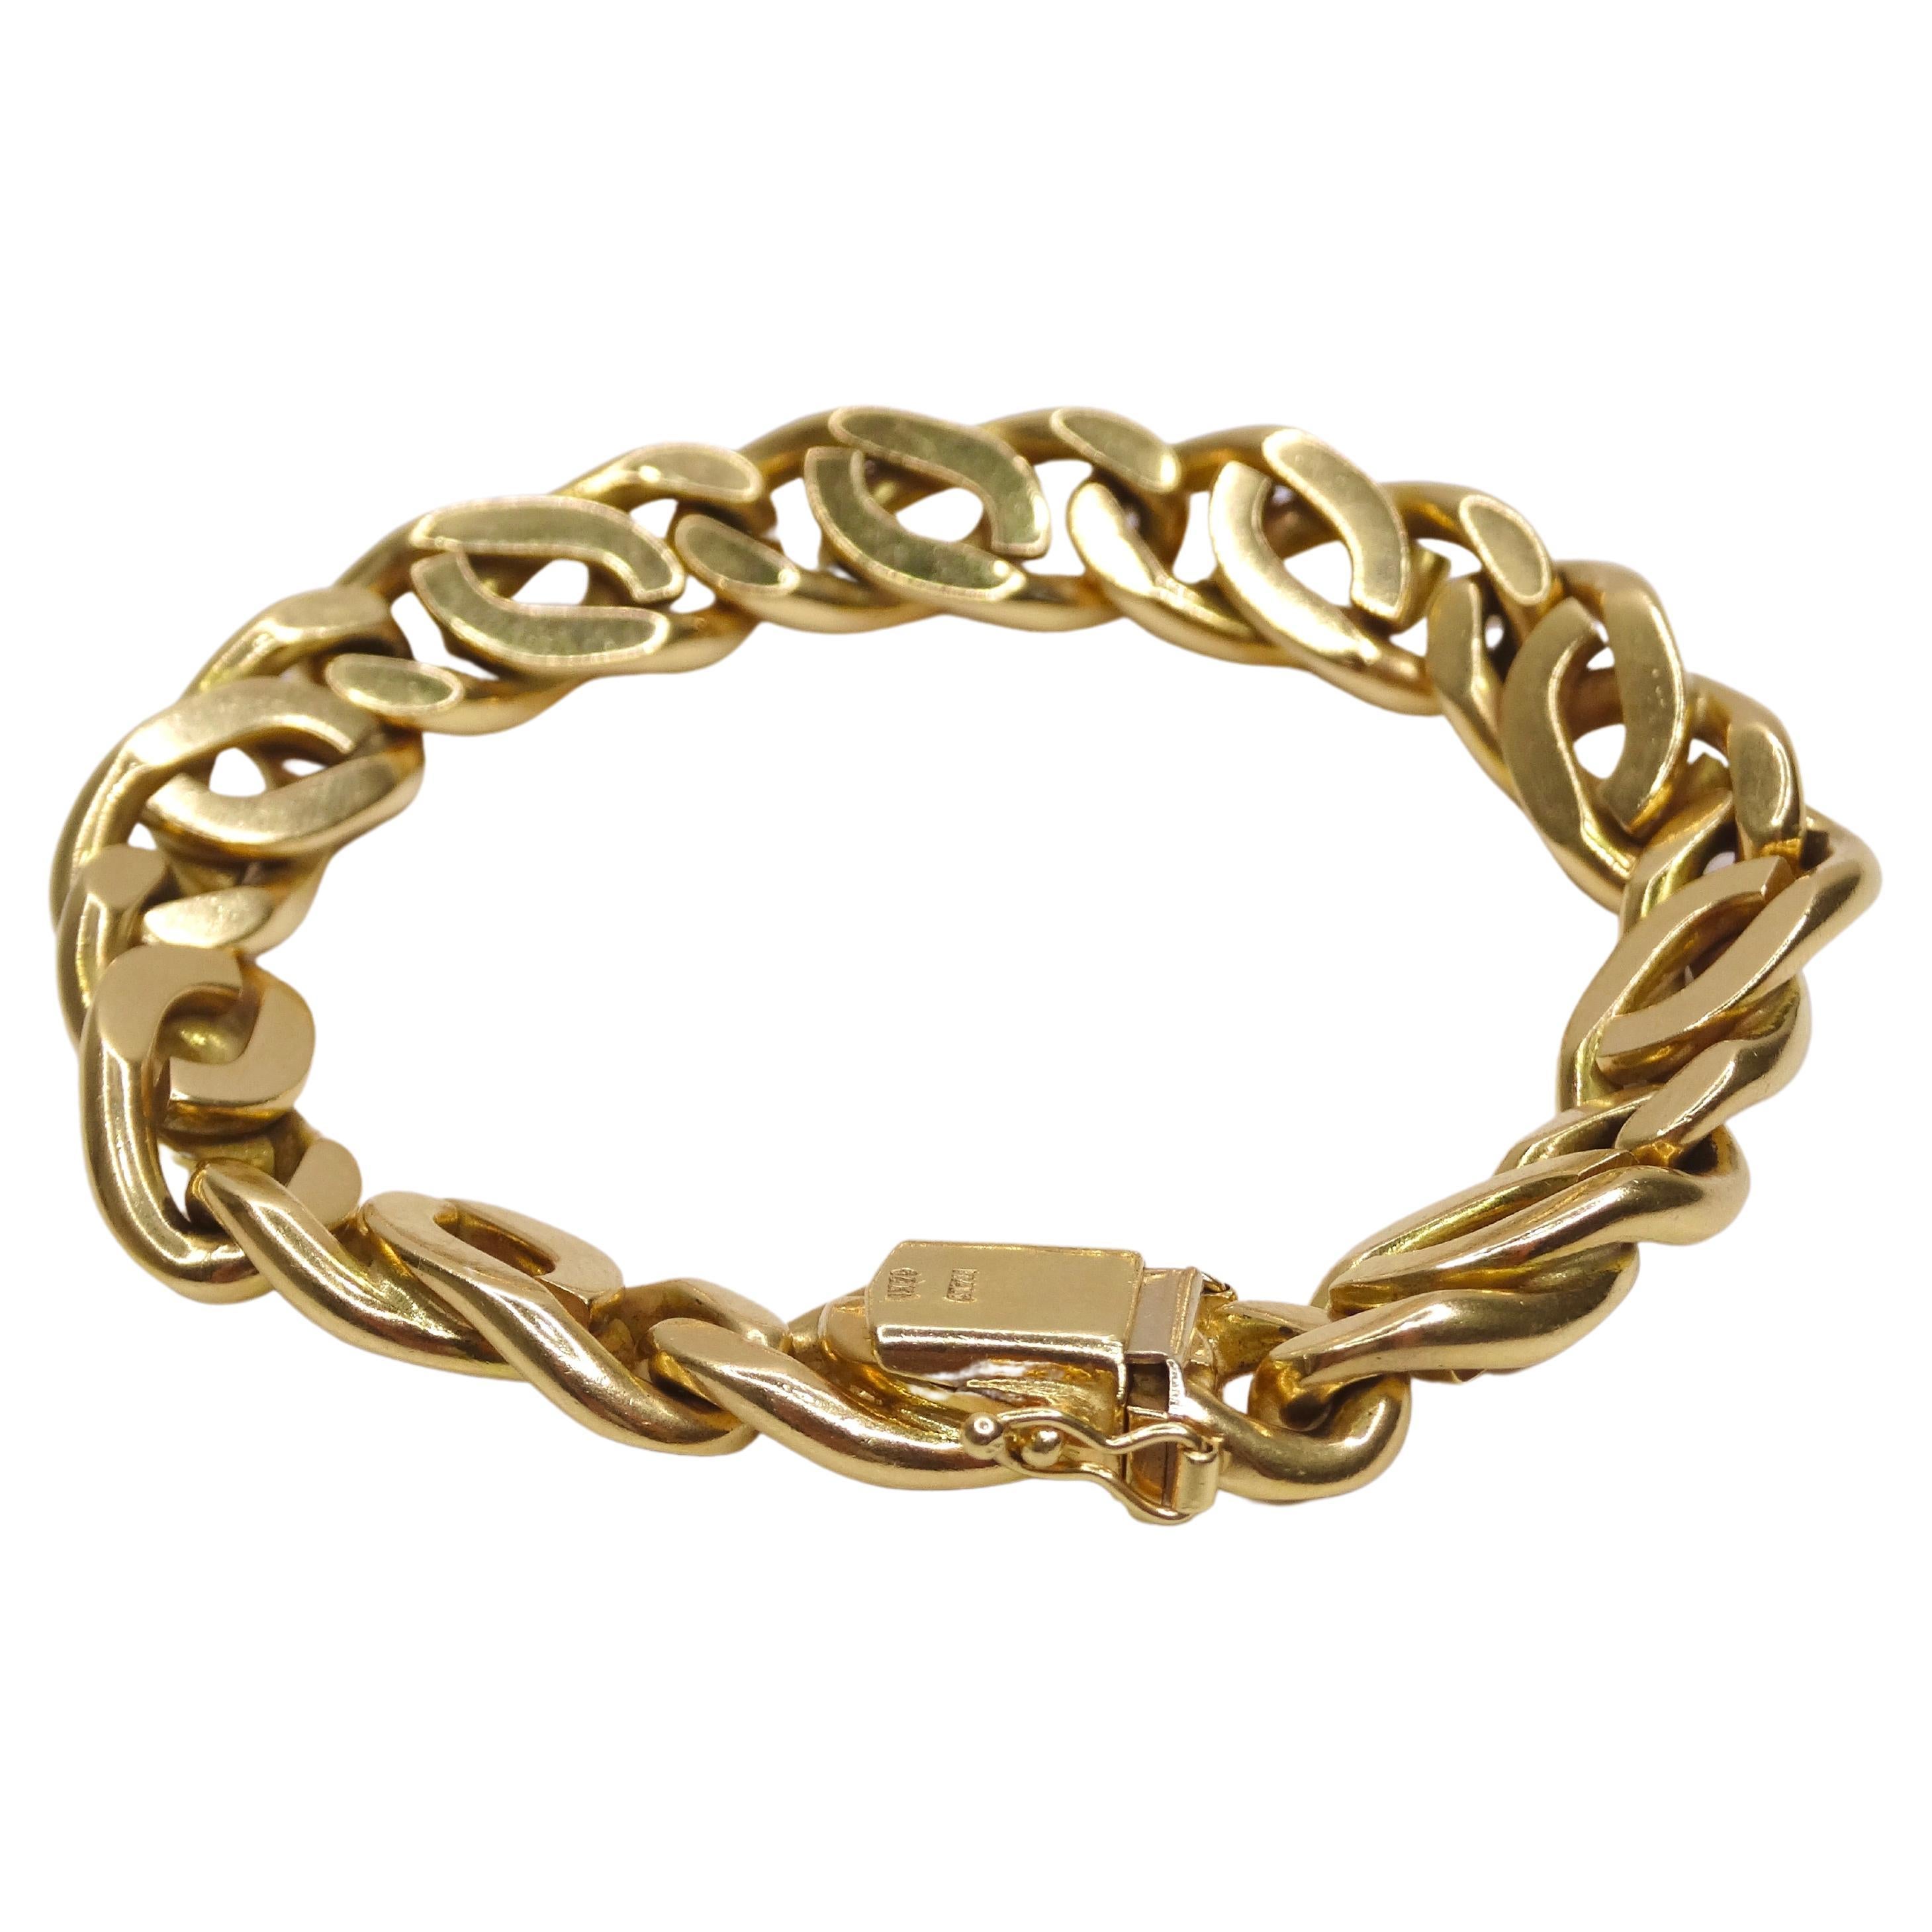 Vous ne pouvez pas vous tromper avec un bracelet à maillons cubains en or ! Il s'agit d'un bracelet à maillons cubains dont les maillons sont torsadés en forme de câble, ce qui lui confère un aspect un peu traditionnel et classique. C'est un